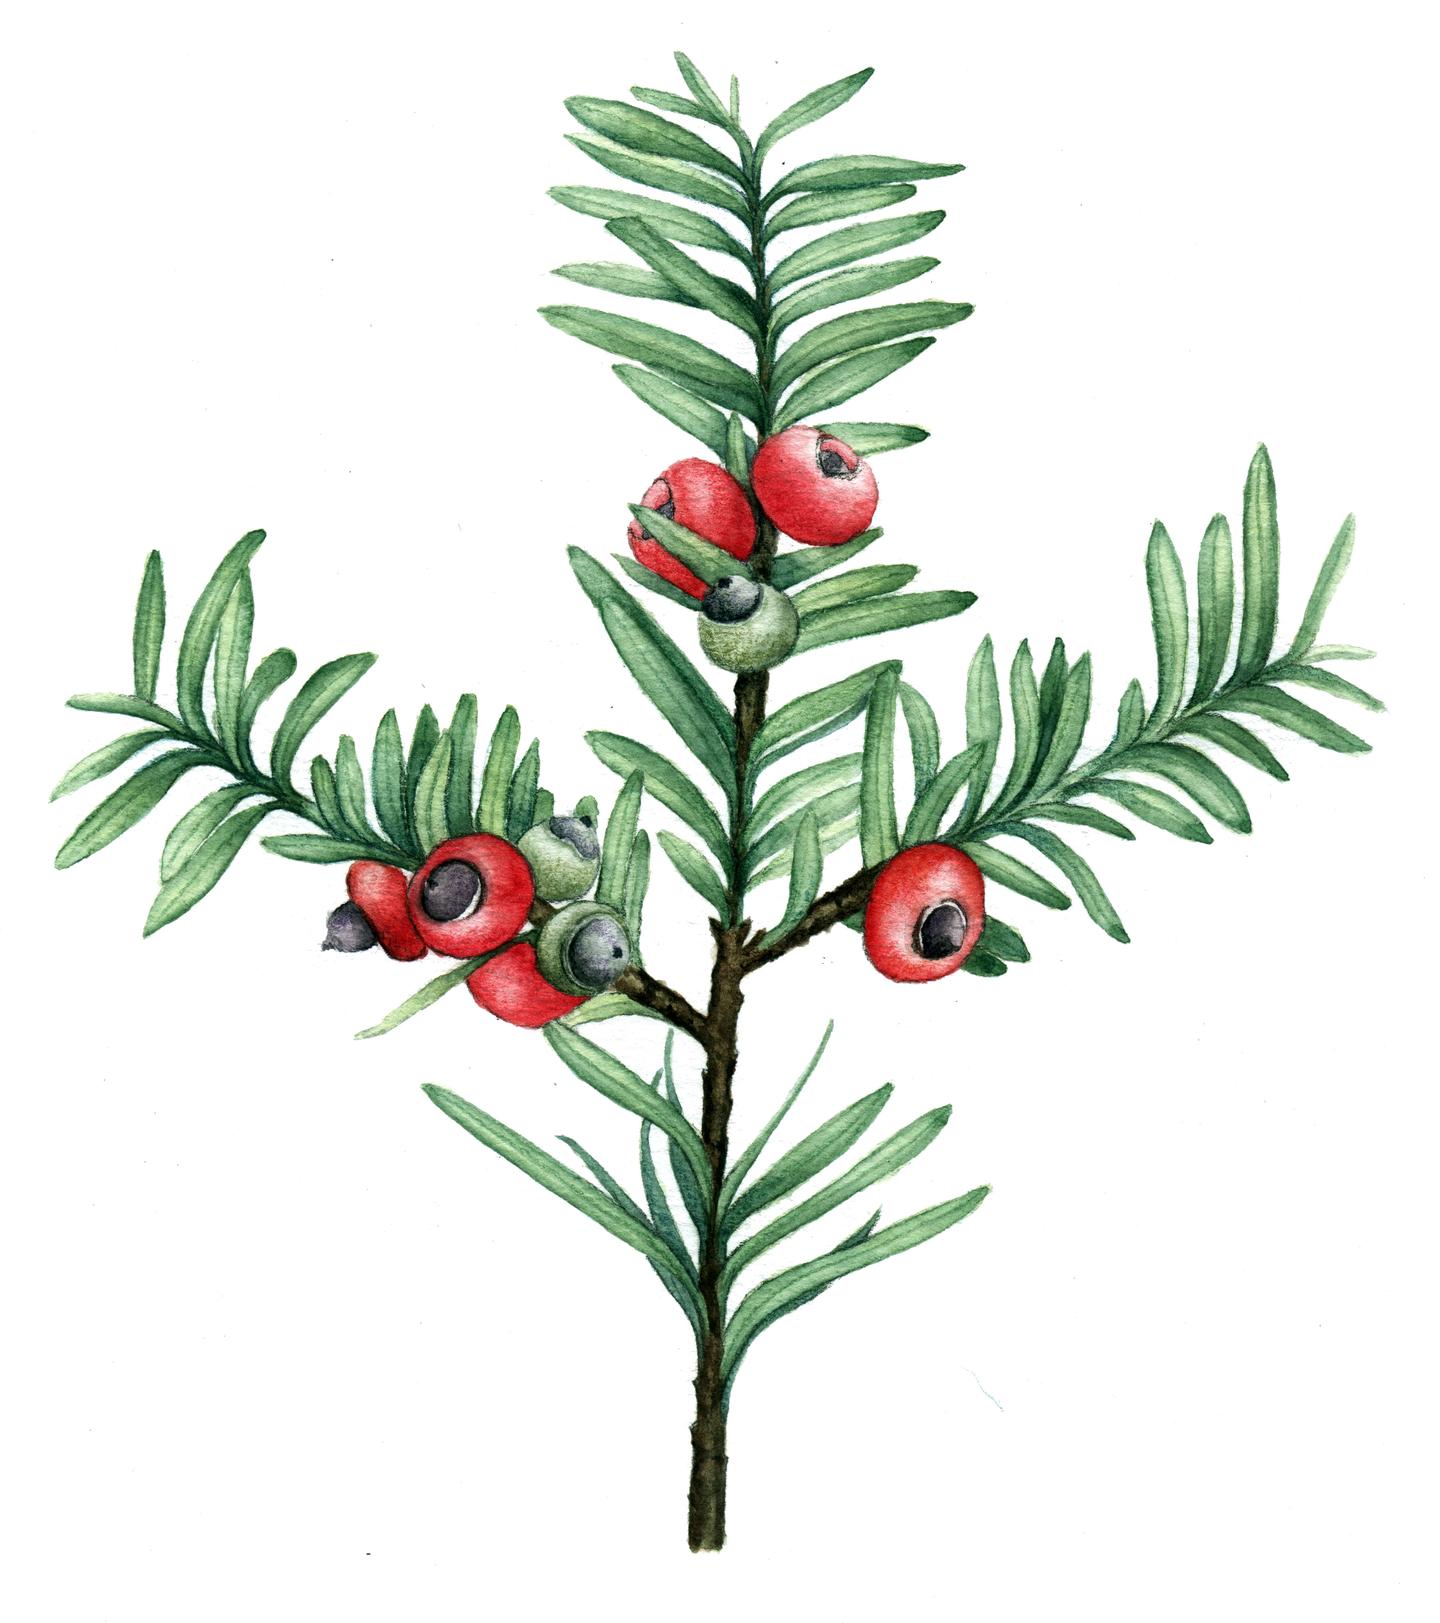 科学绘画裸子植物类的红豆杉家族成员